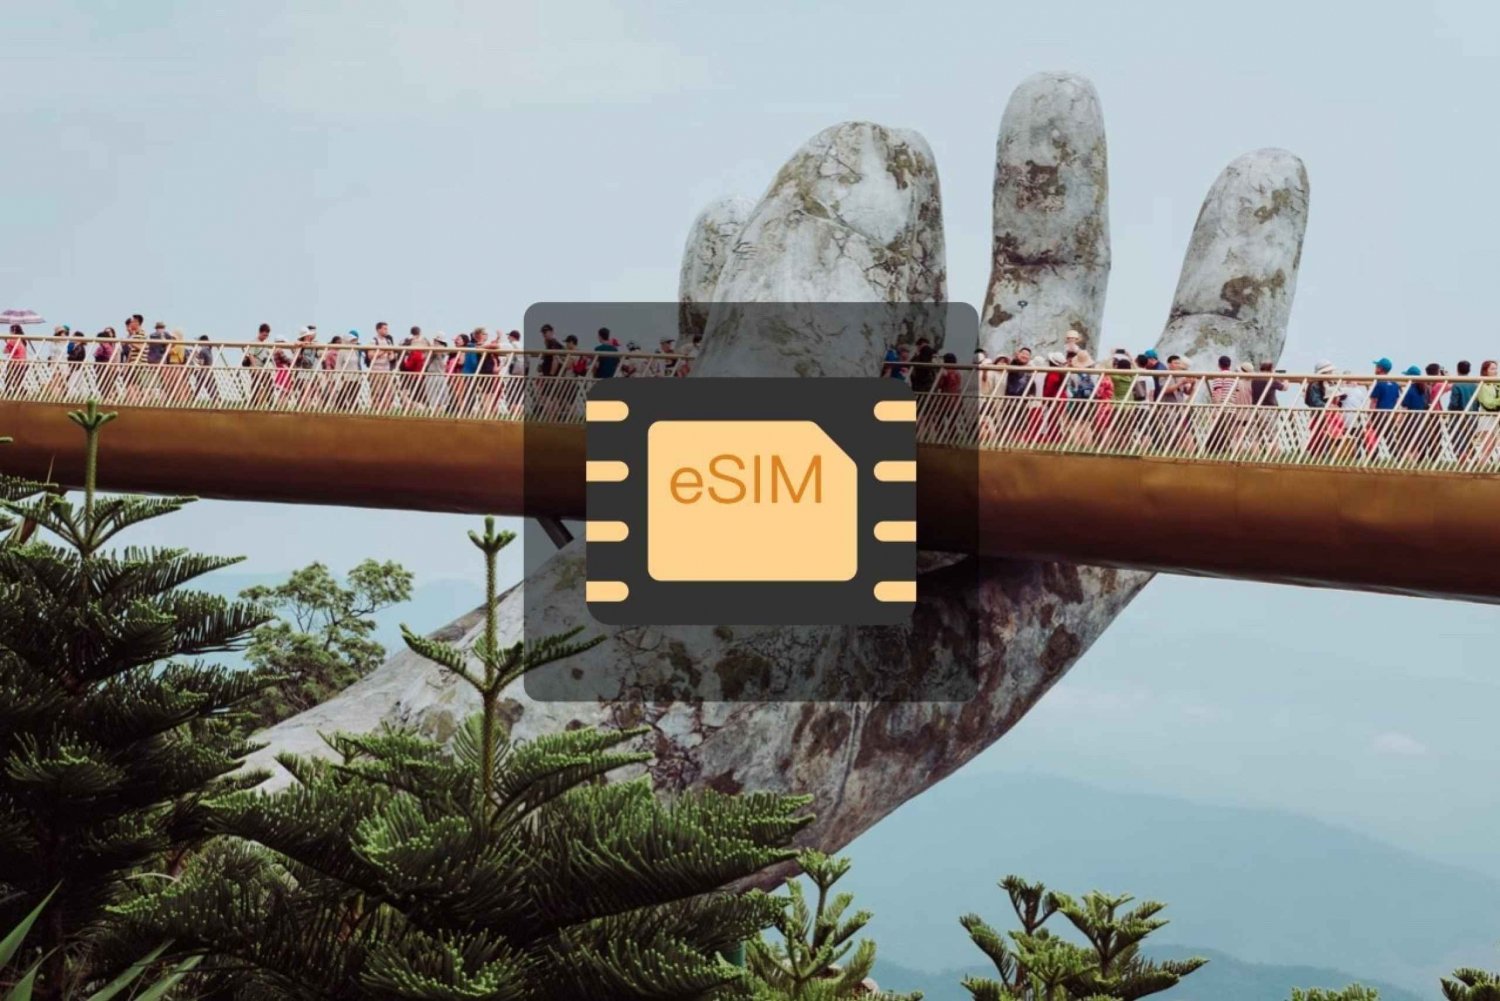 Vietnam: eSIM Data Plan